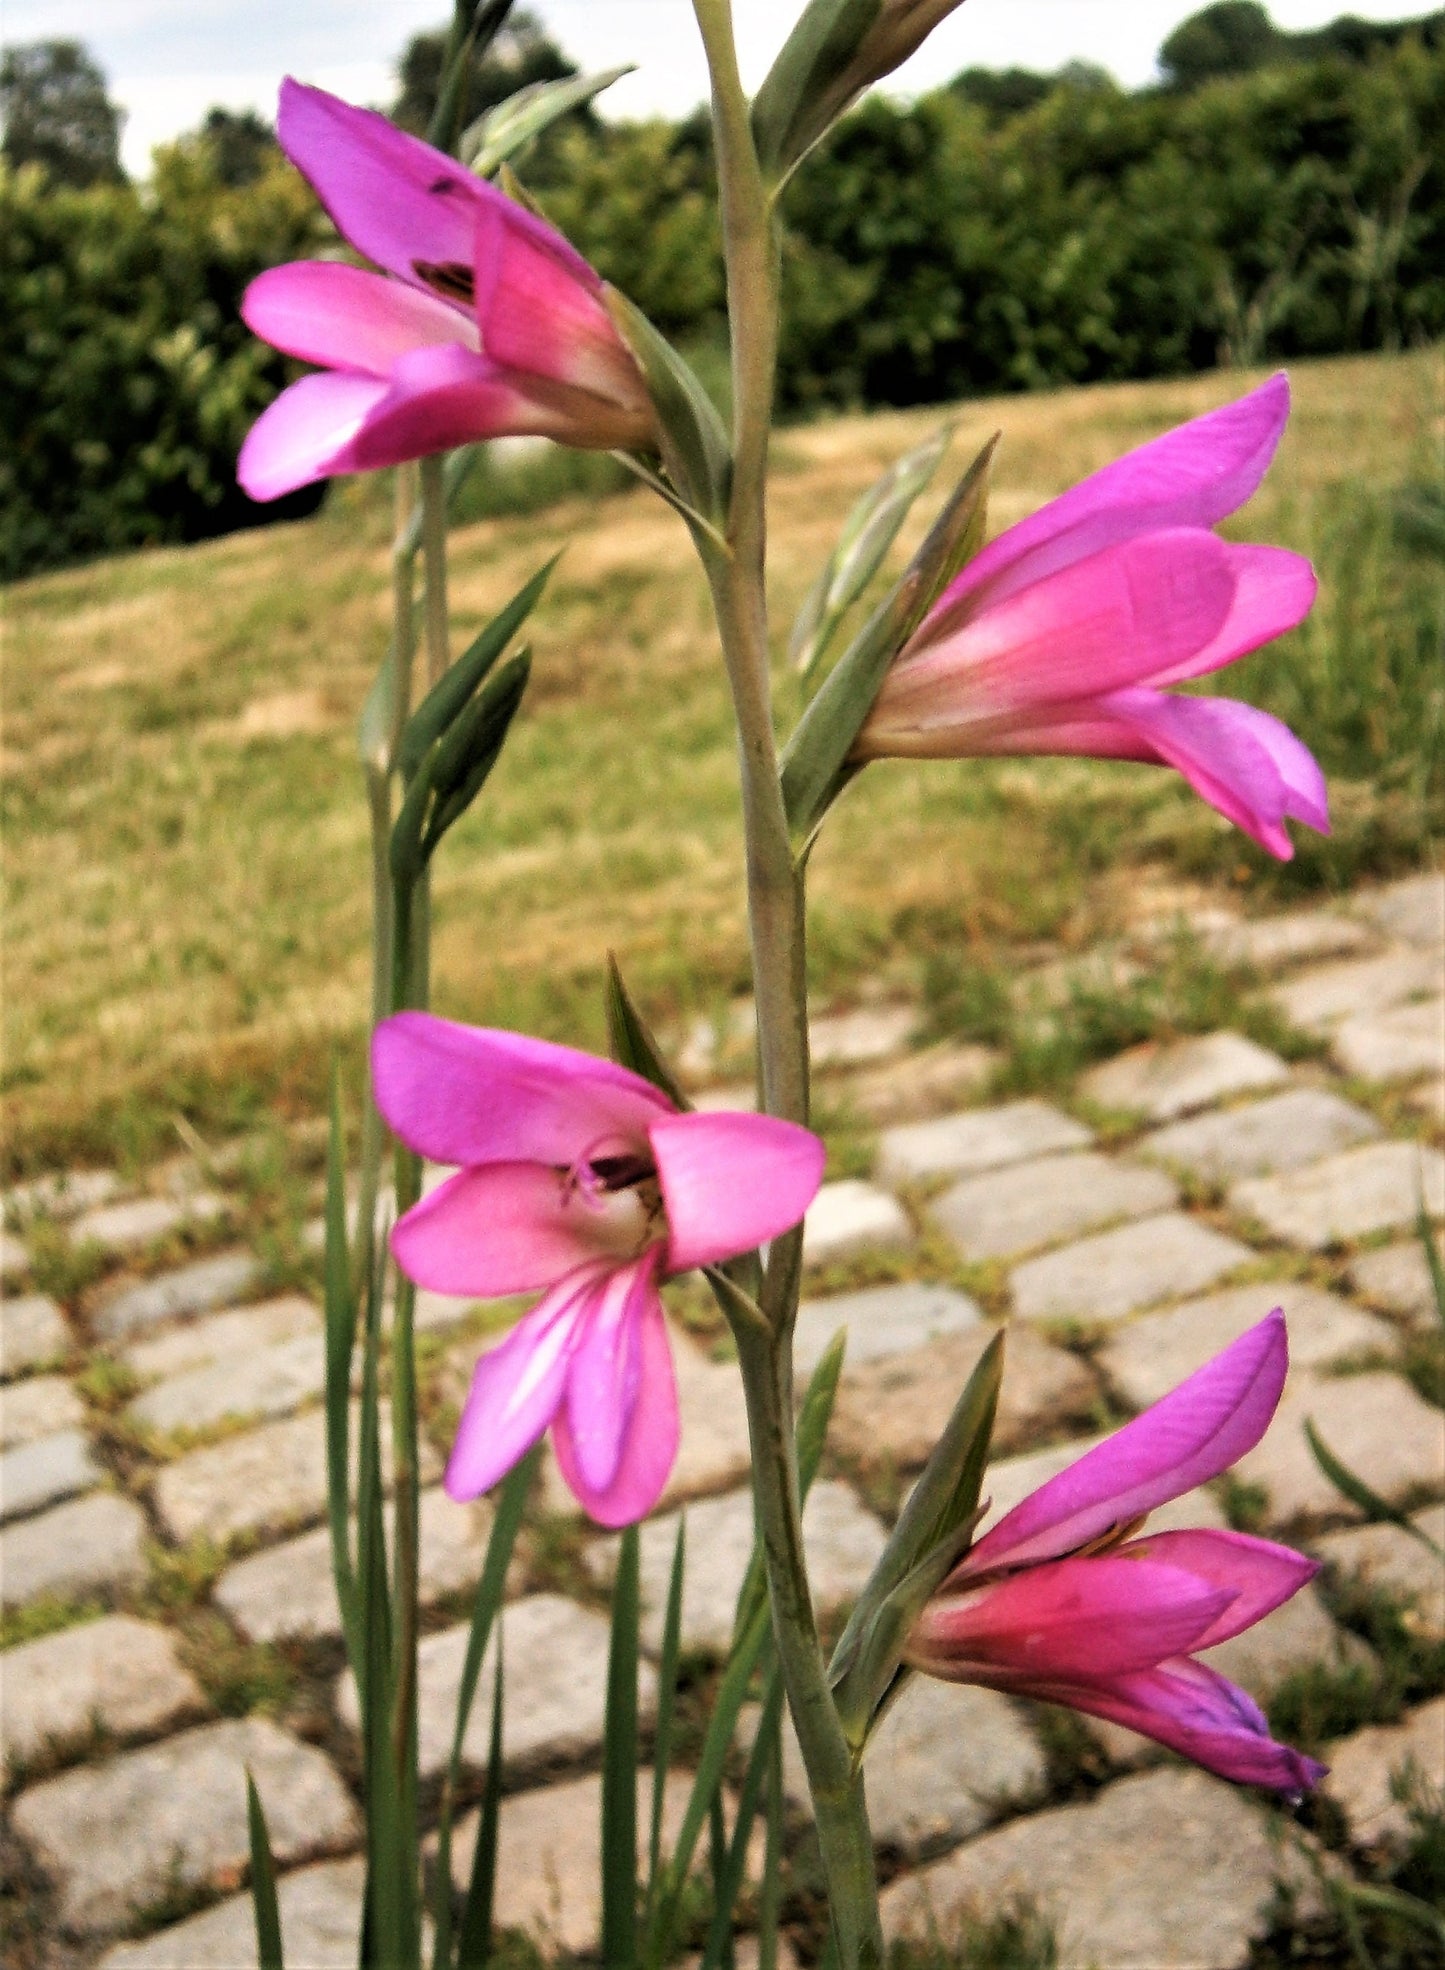 10 ITALIAN GLADIOLUS Italicus Sword Lily Purple Pink Flower Seeds